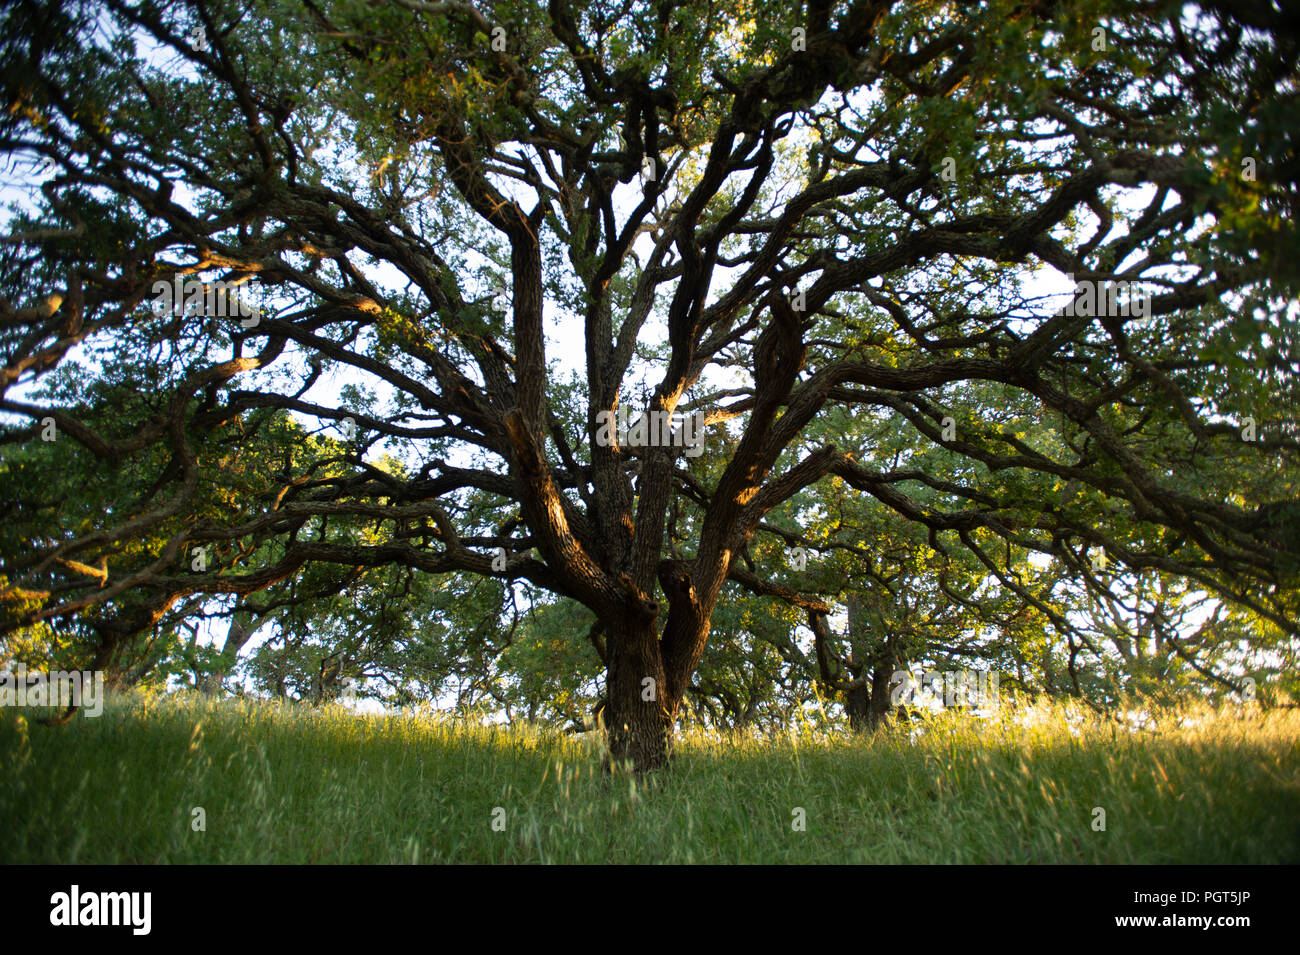 La mattina presto la luce del sole mette in evidenza un maestoso Blue Oak tree nei boschi del Monte Wanda. Foto Stock